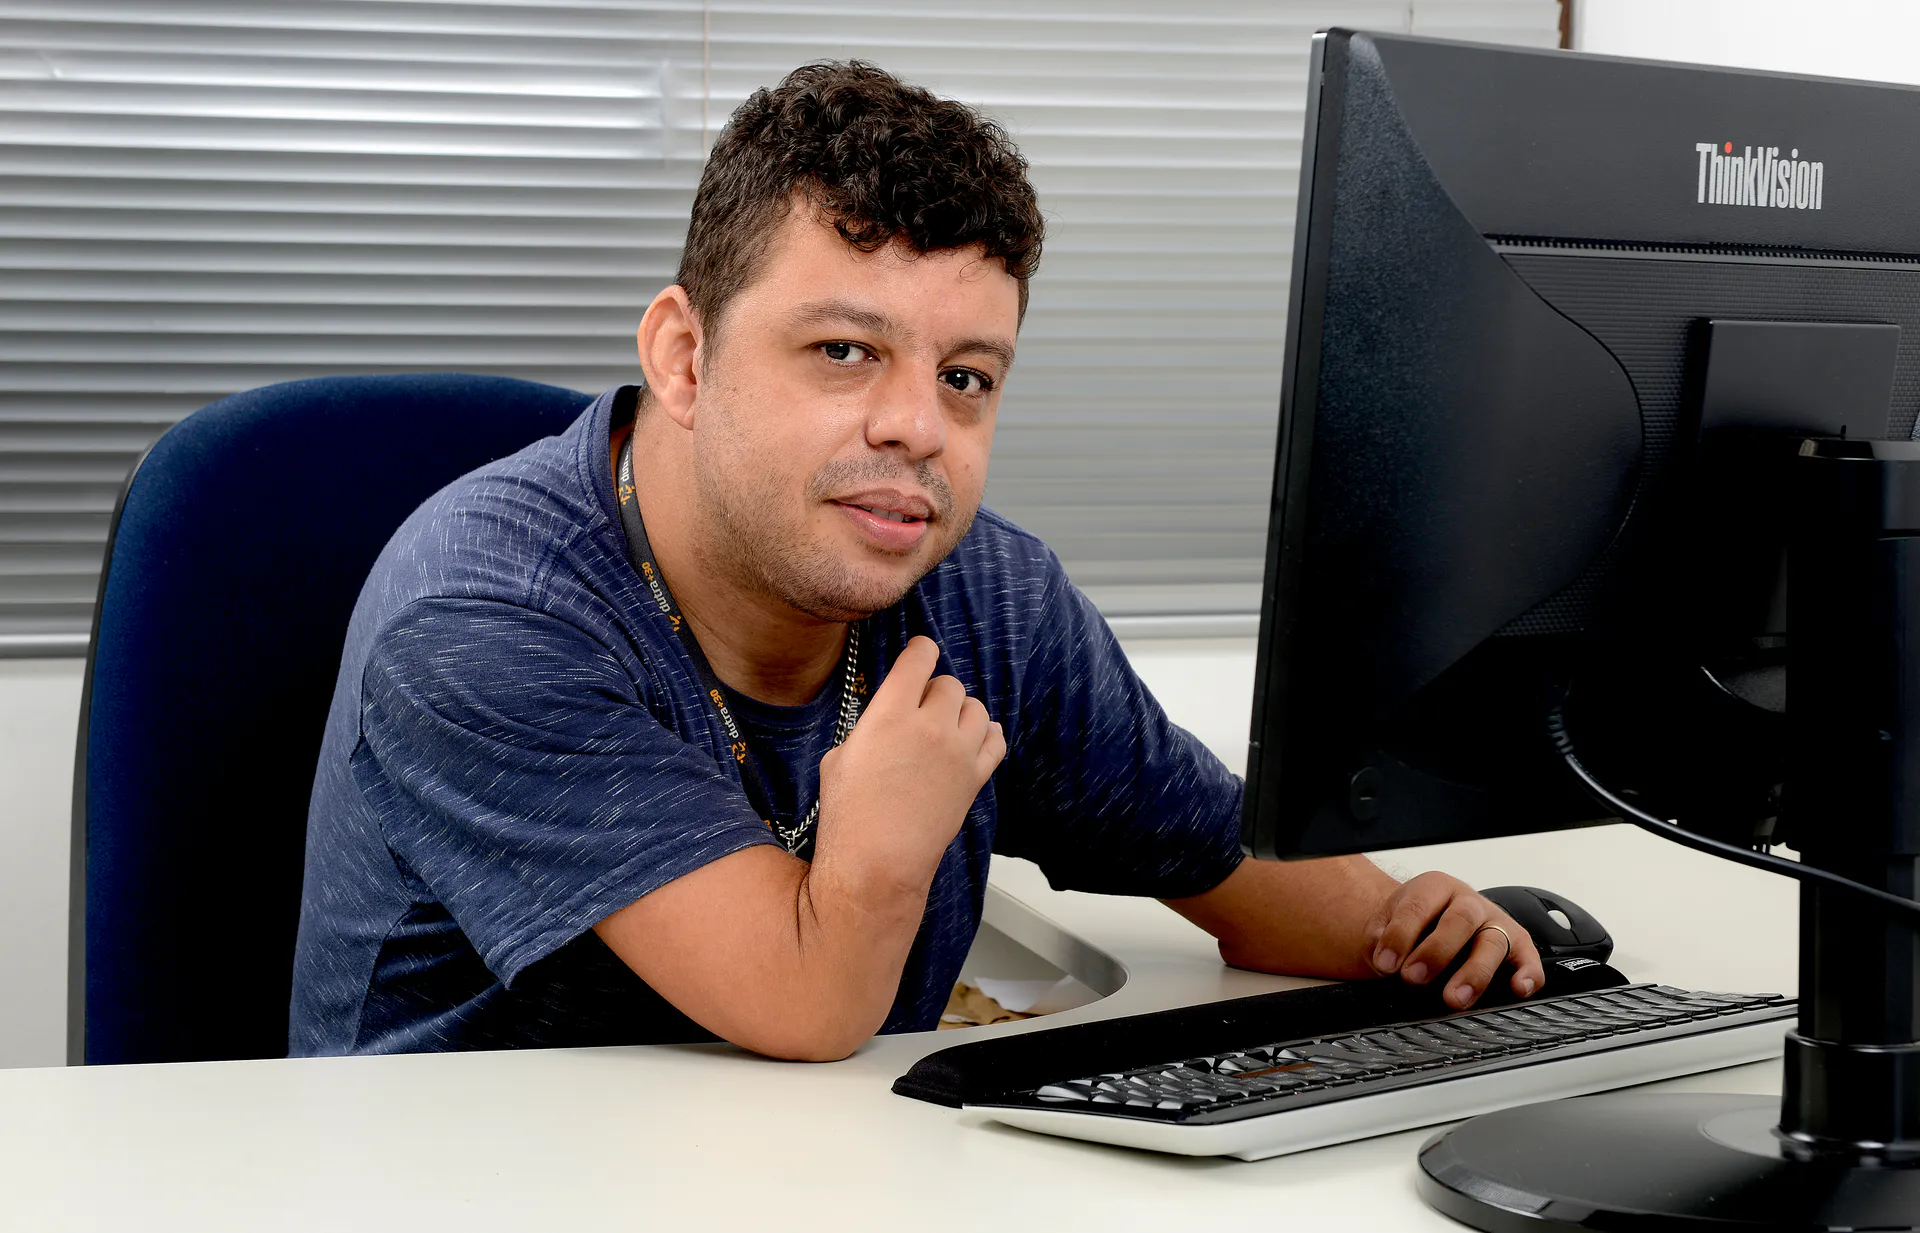 Imagem de perfil de um homem sentado em frente à um computador